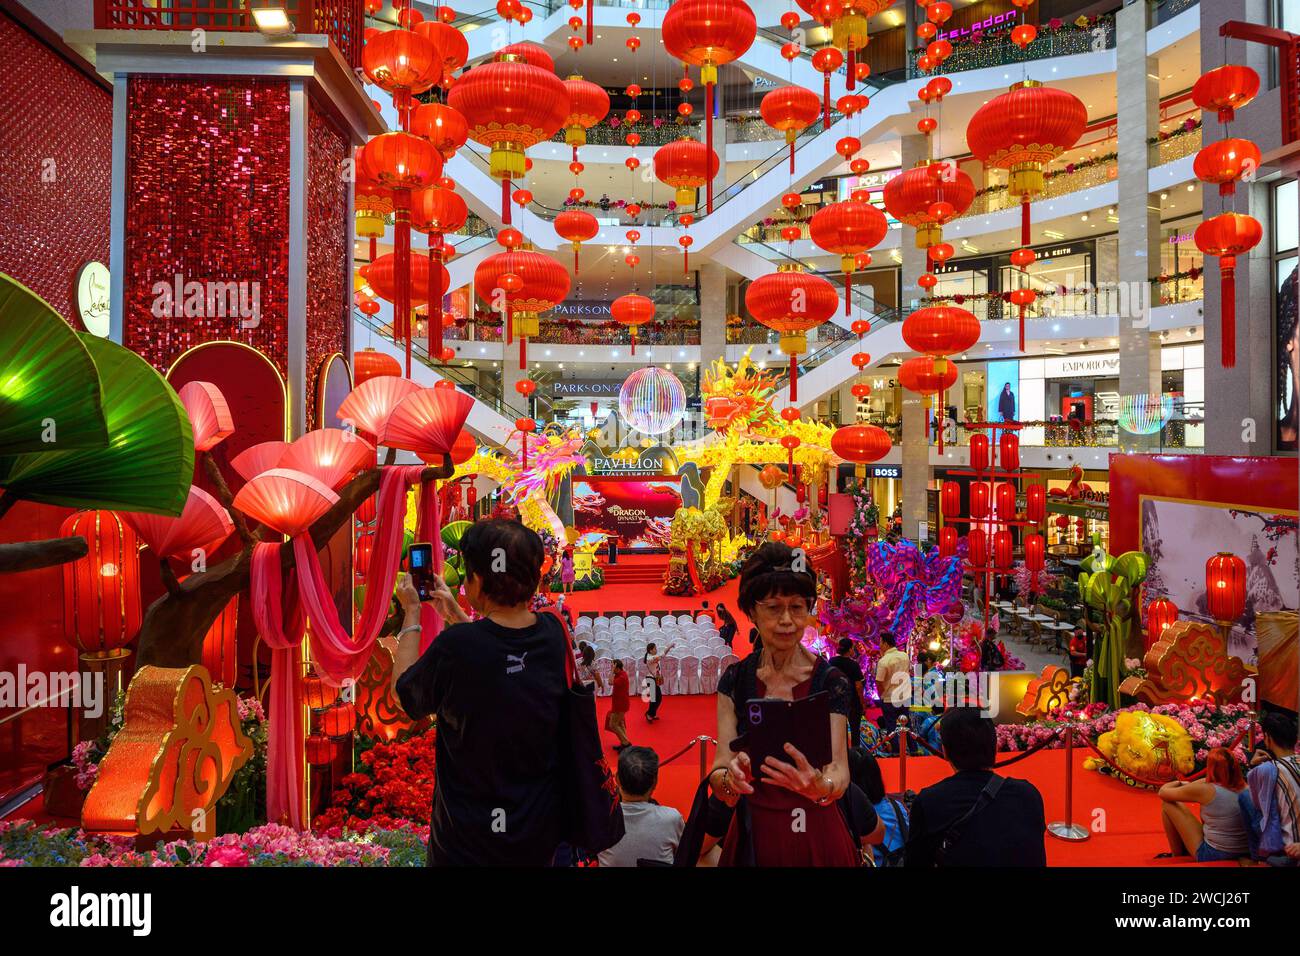 The Curve shopping mall in Kuala Lumpur, Malaysia